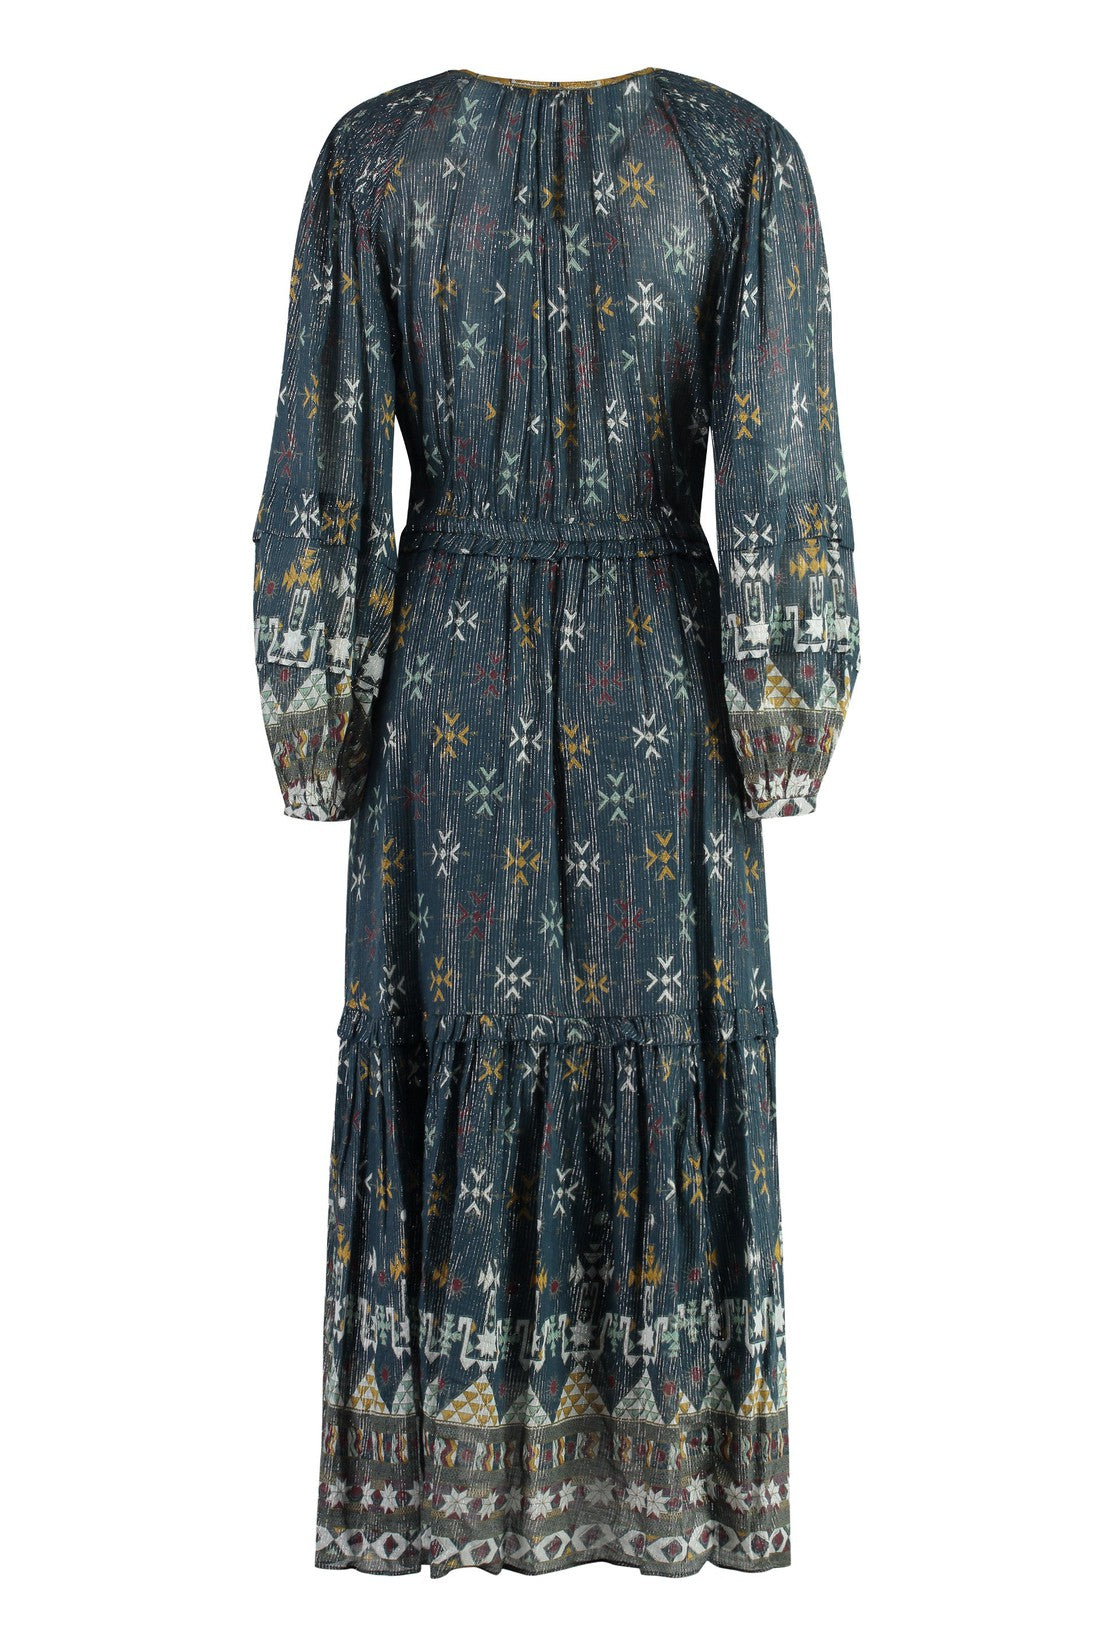 Isabel Marant Étoile-OUTLET-SALE-Fratela Printed cotton dress-ARCHIVIST